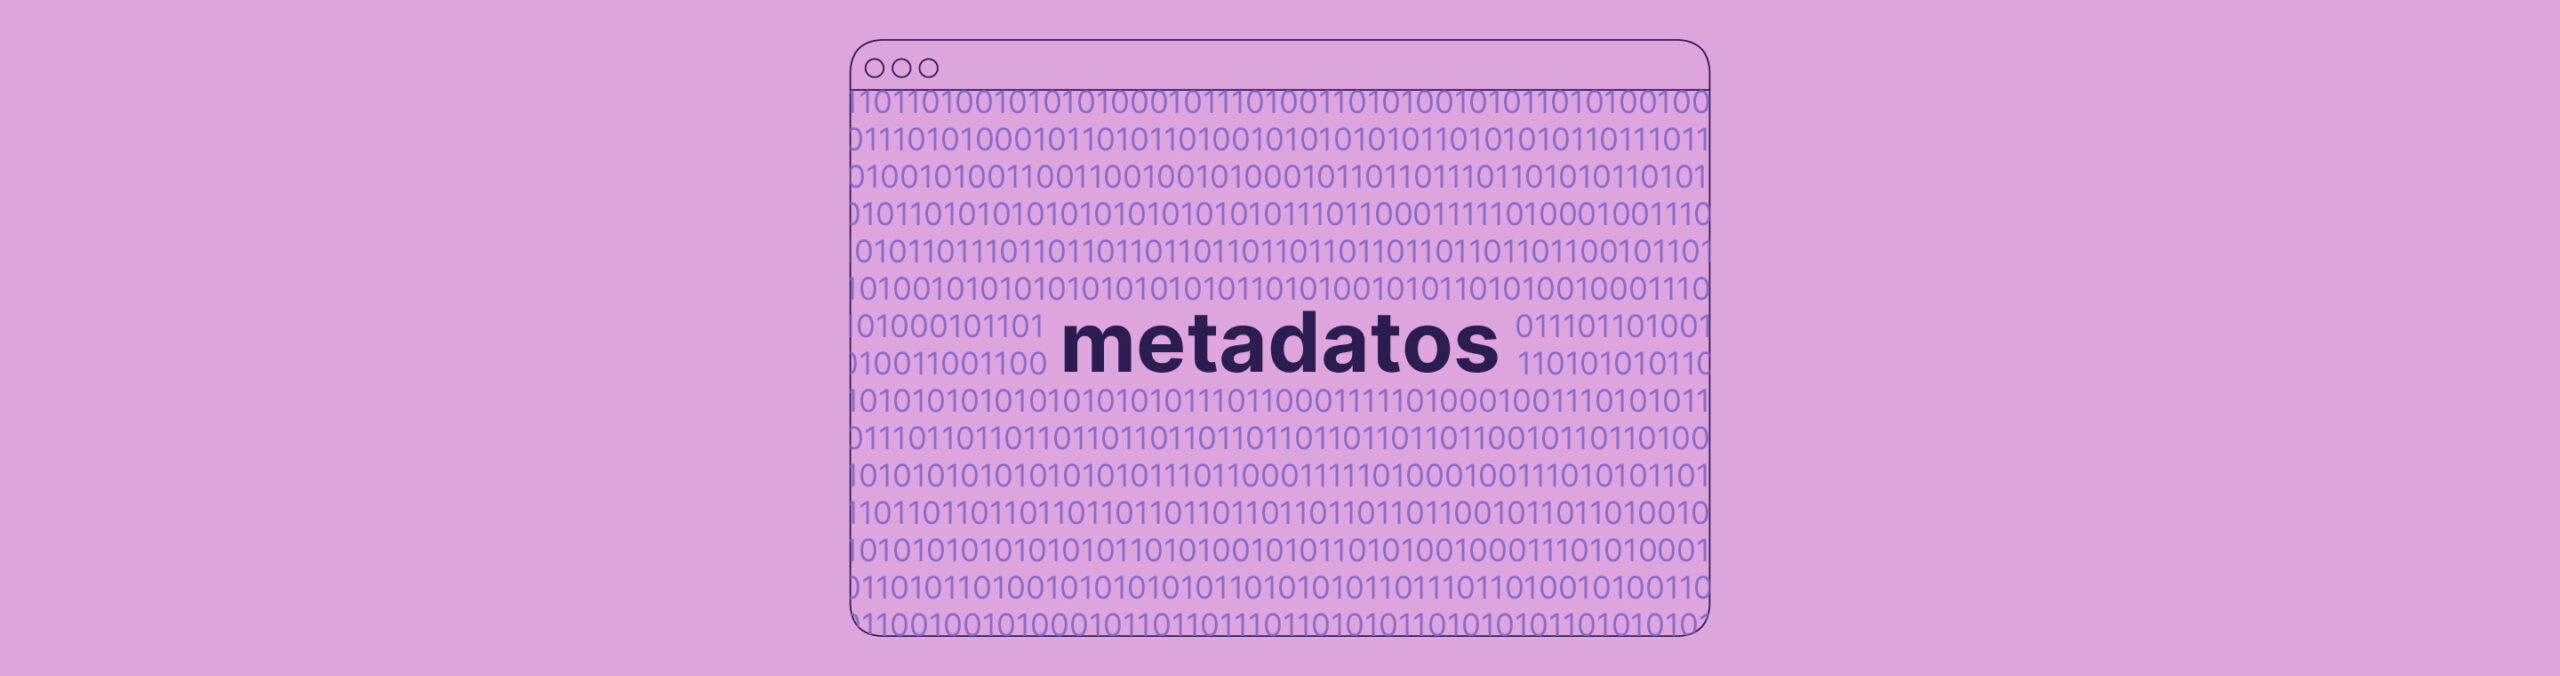 ¿Qué son los metadatos?